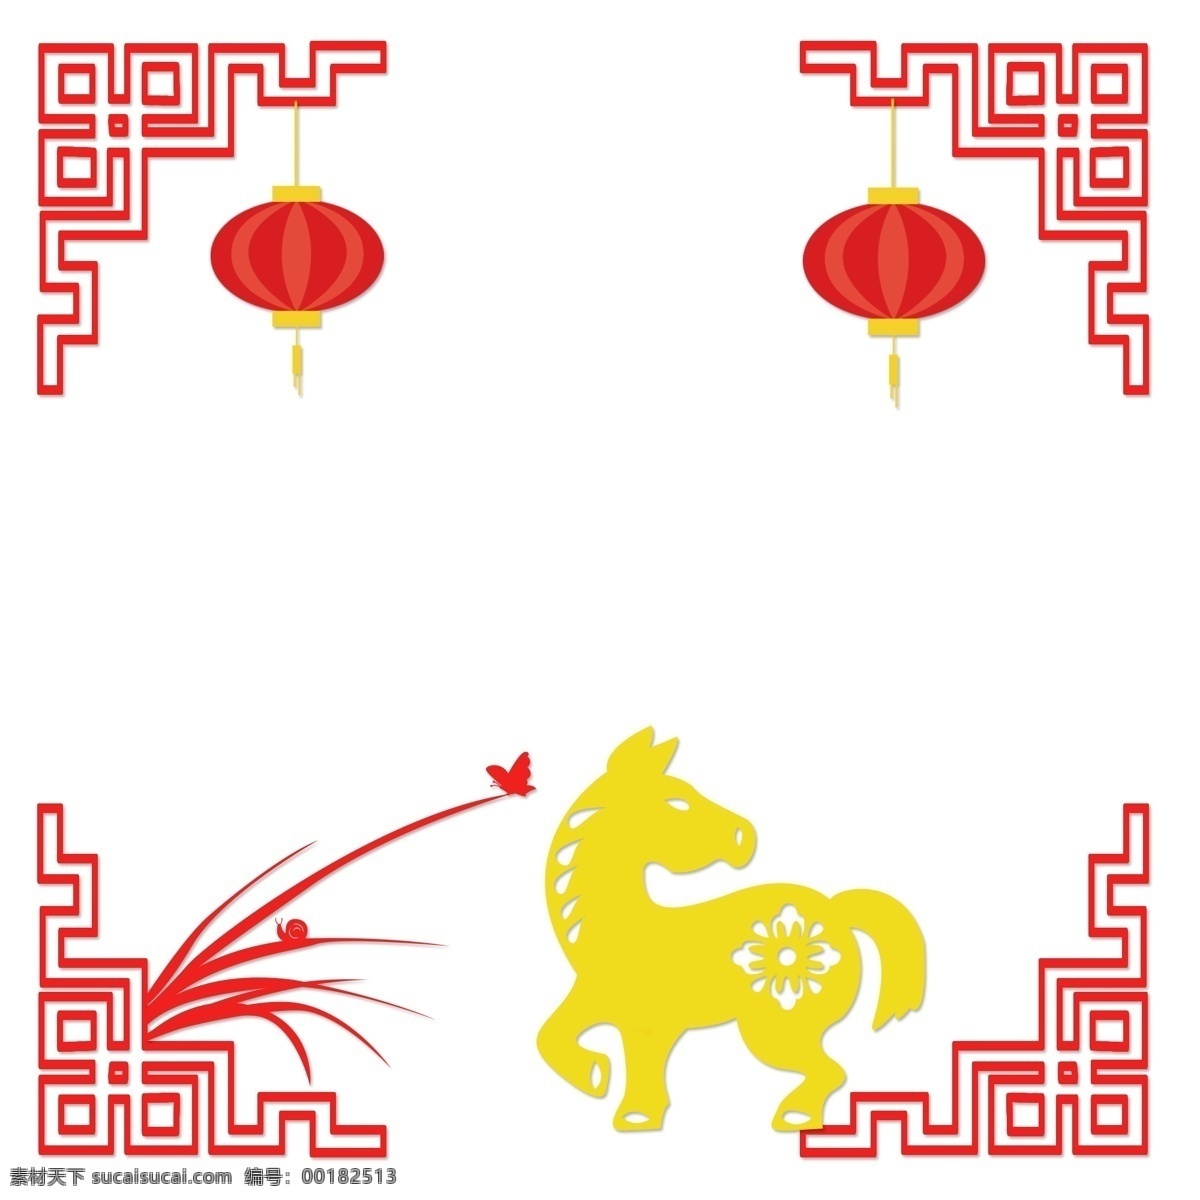 中国 风 古典 风格 扁平 边框 矢量图 十二生肖 中国风 古典风格 扁平风 简约 古风手绘 矢量套图 红色 黄色 古风 马